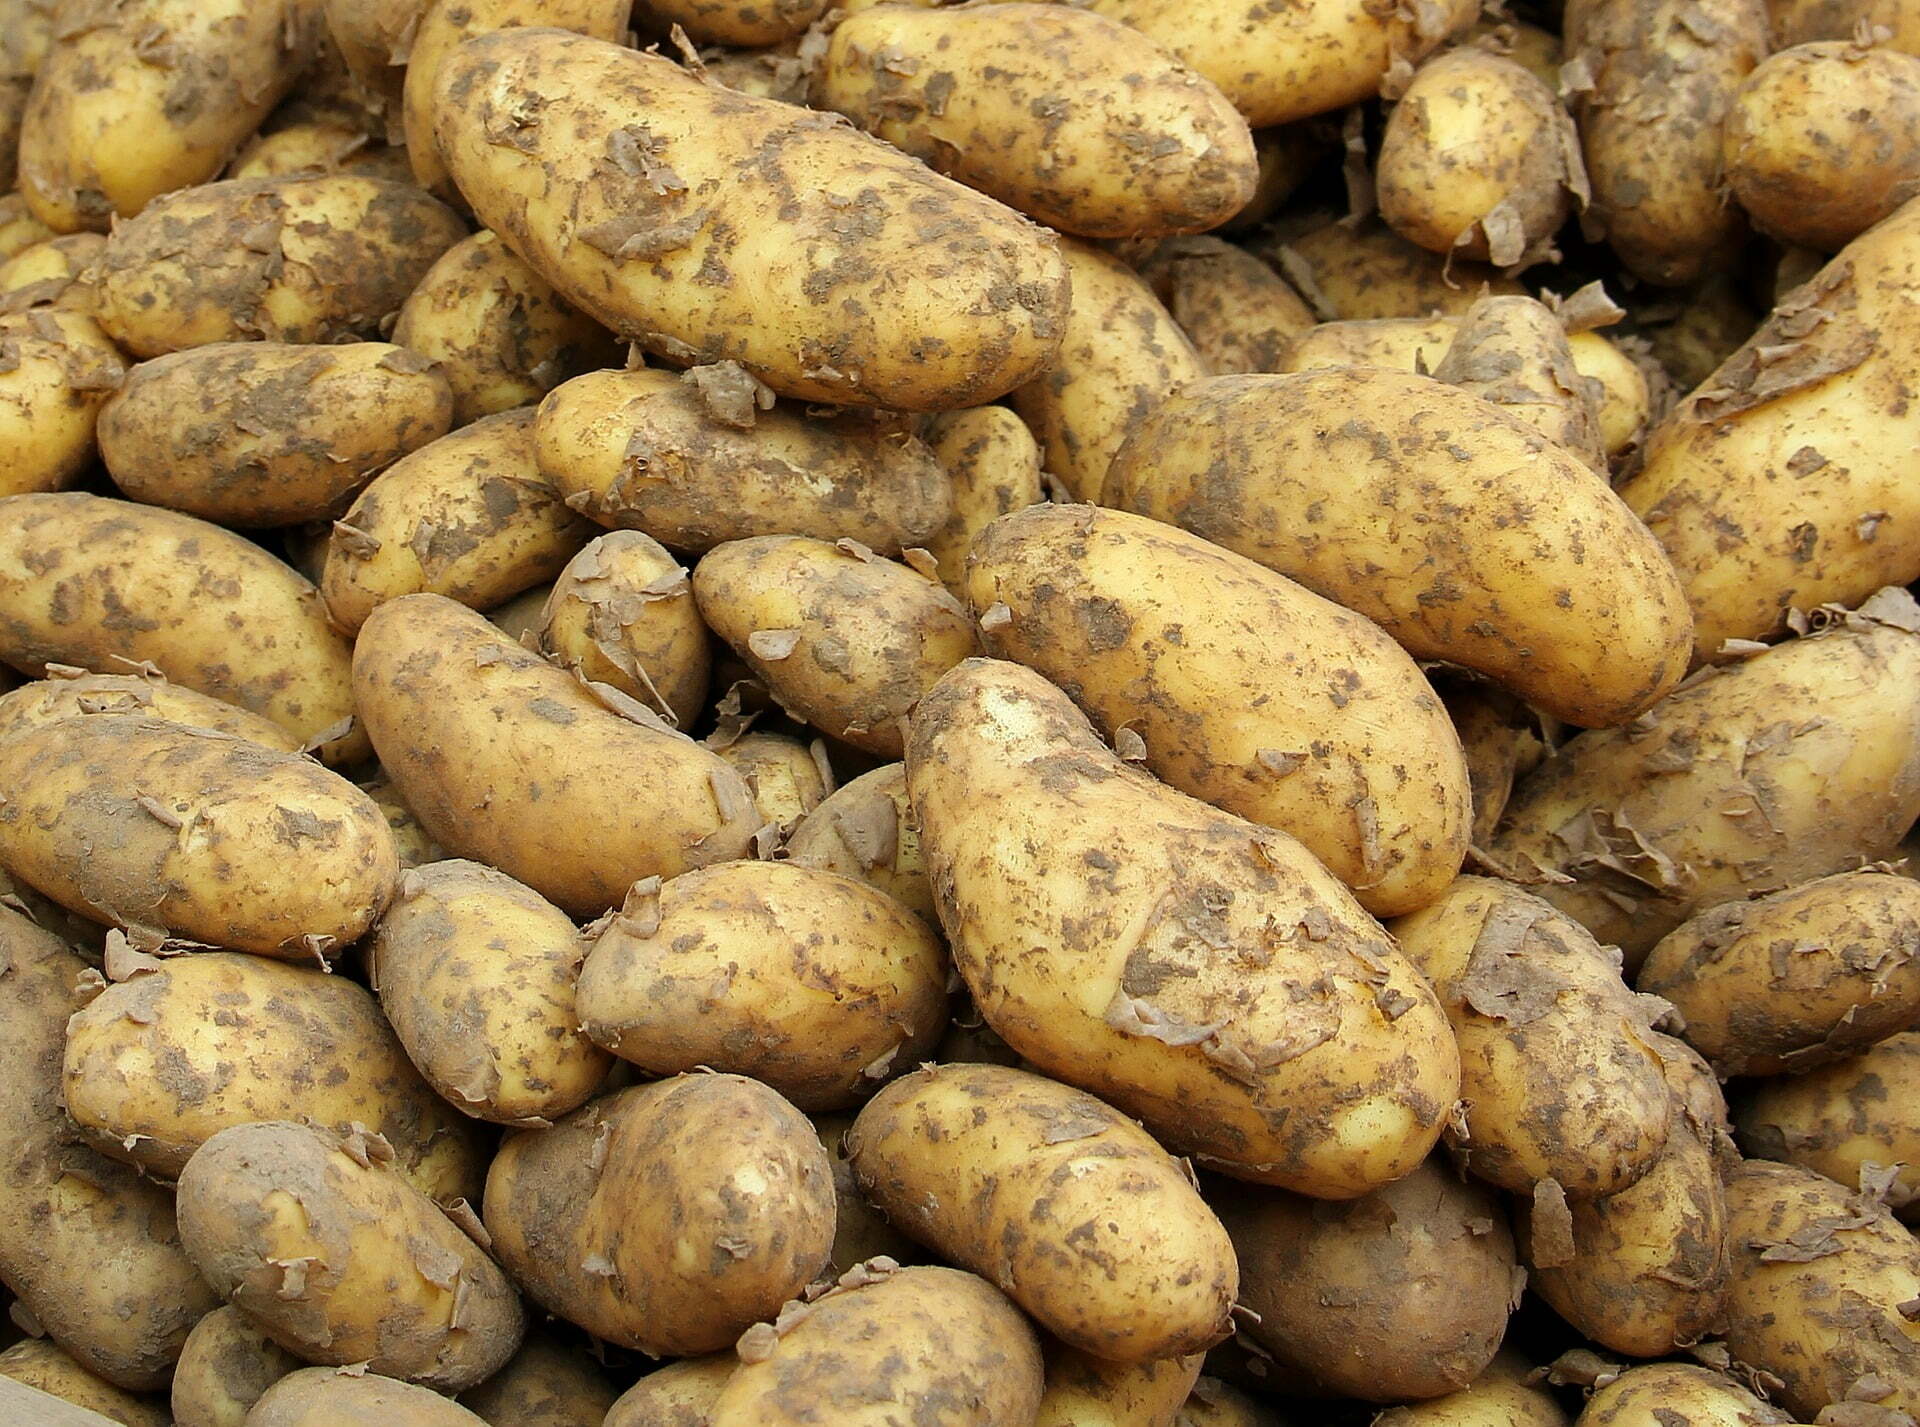 Prohibición del clorprofam en las patatas